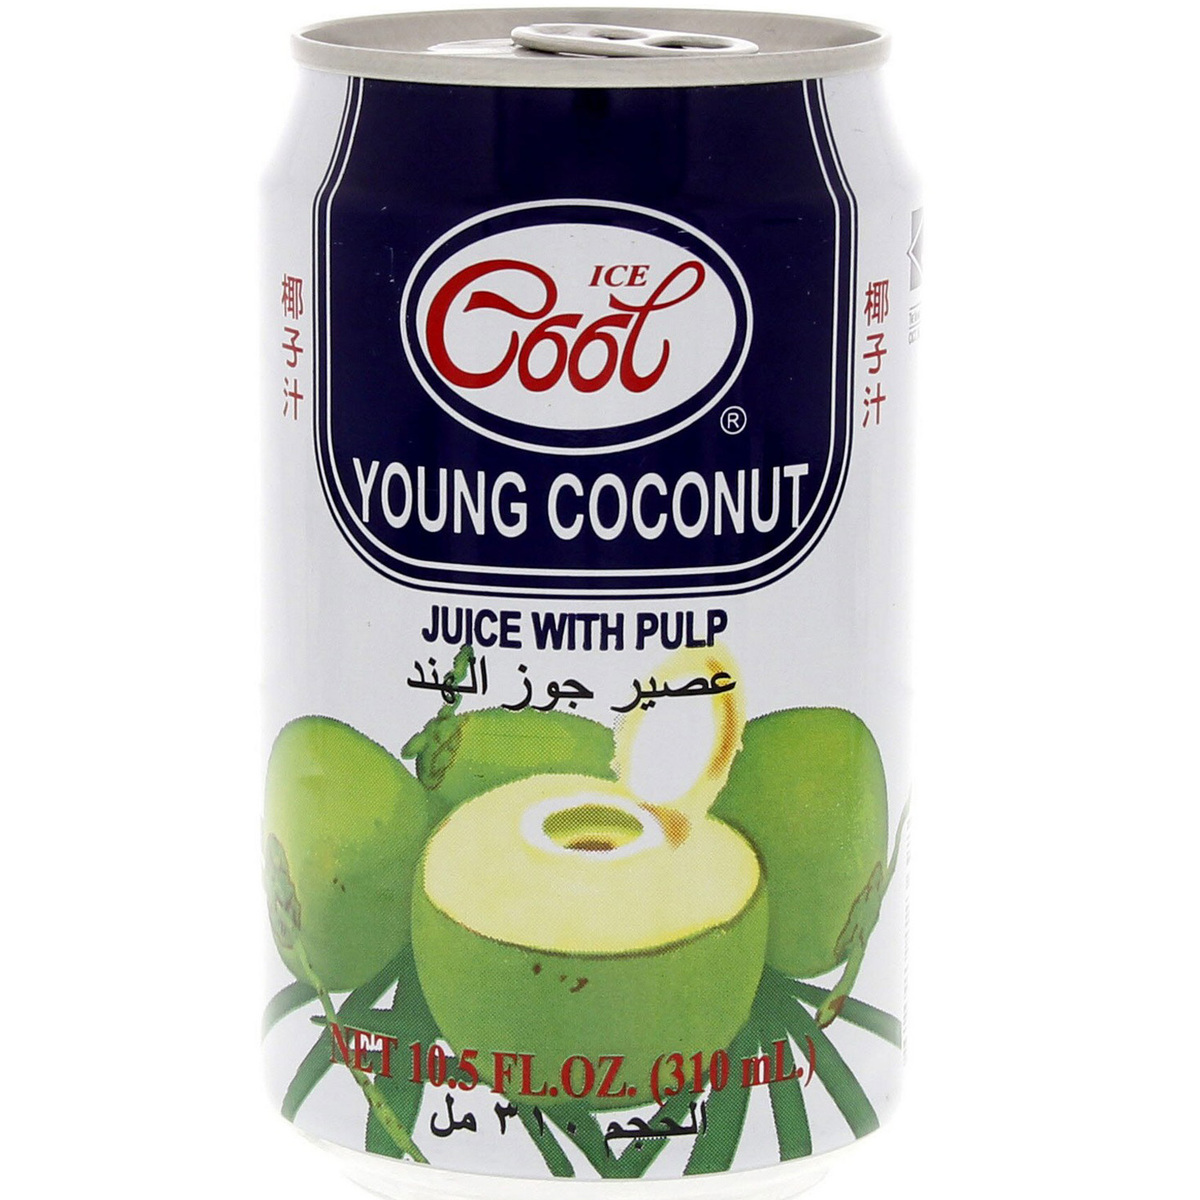 Coconut juice